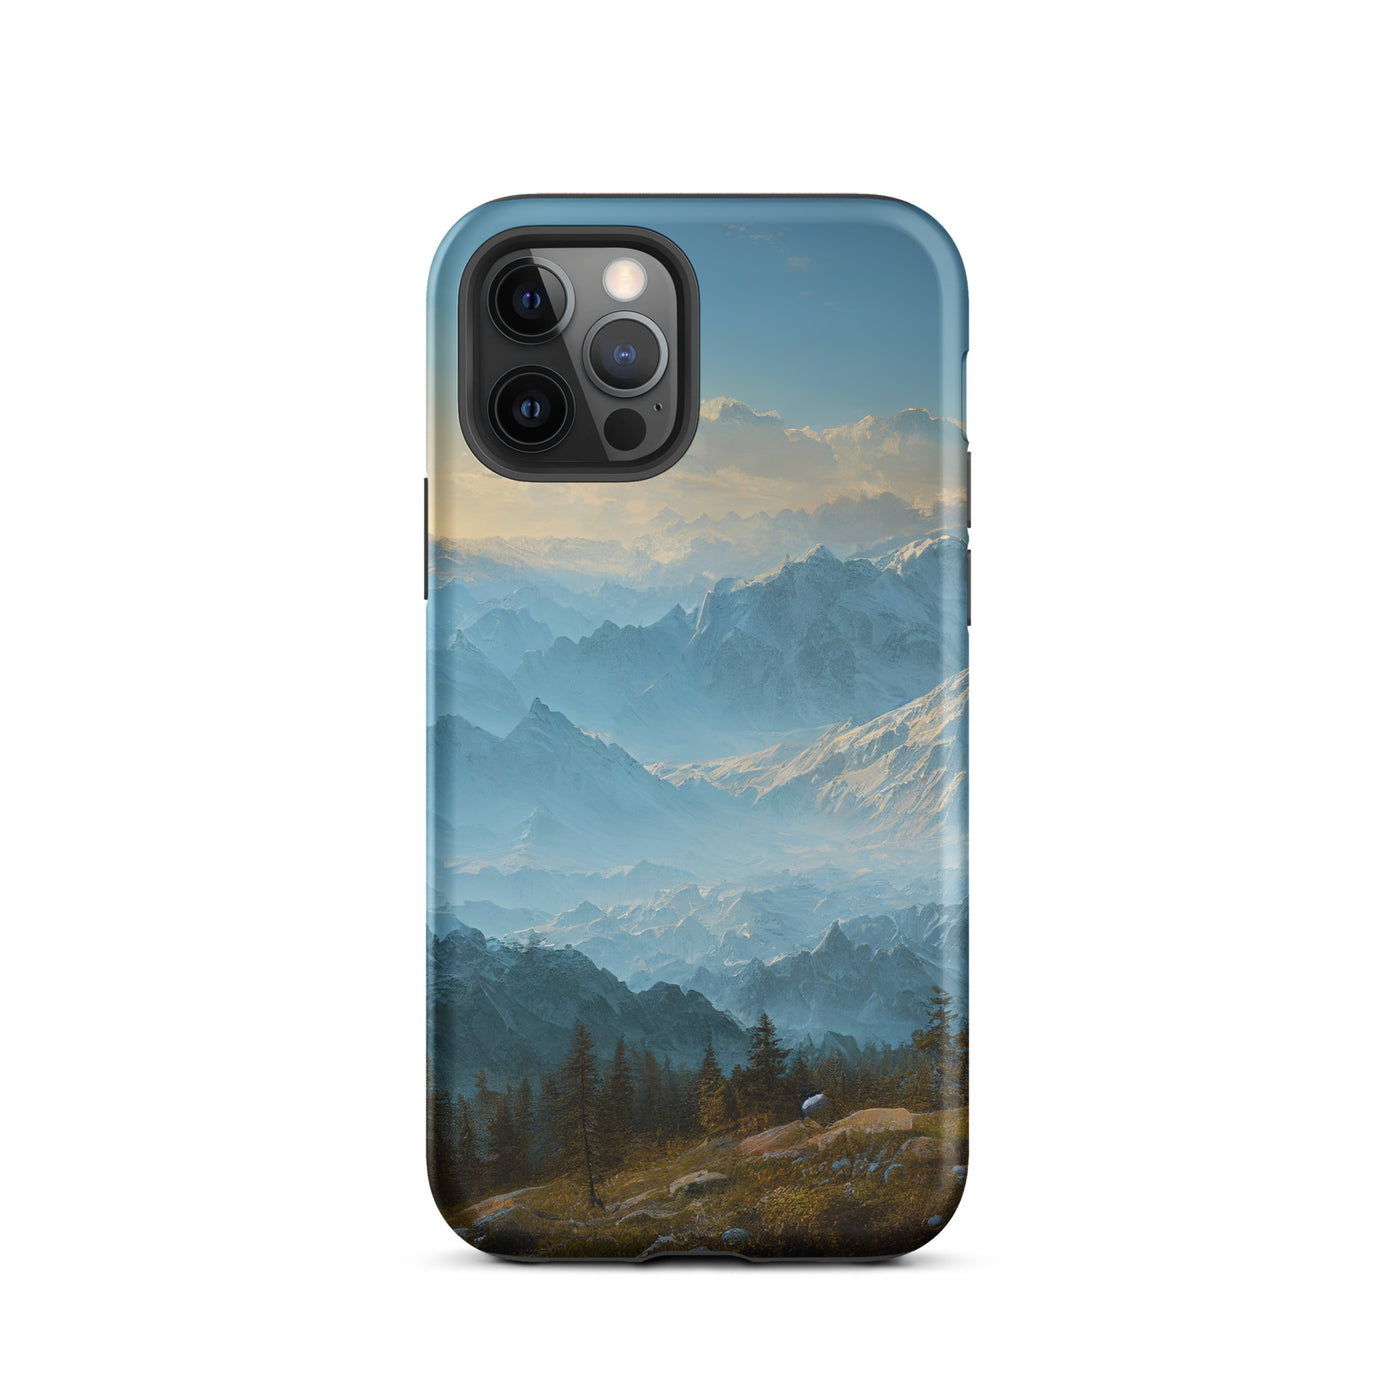 Schöne Berge mit Nebel bedeckt - Ölmalerei - iPhone Schutzhülle (robust) berge xxx iPhone 12 Pro